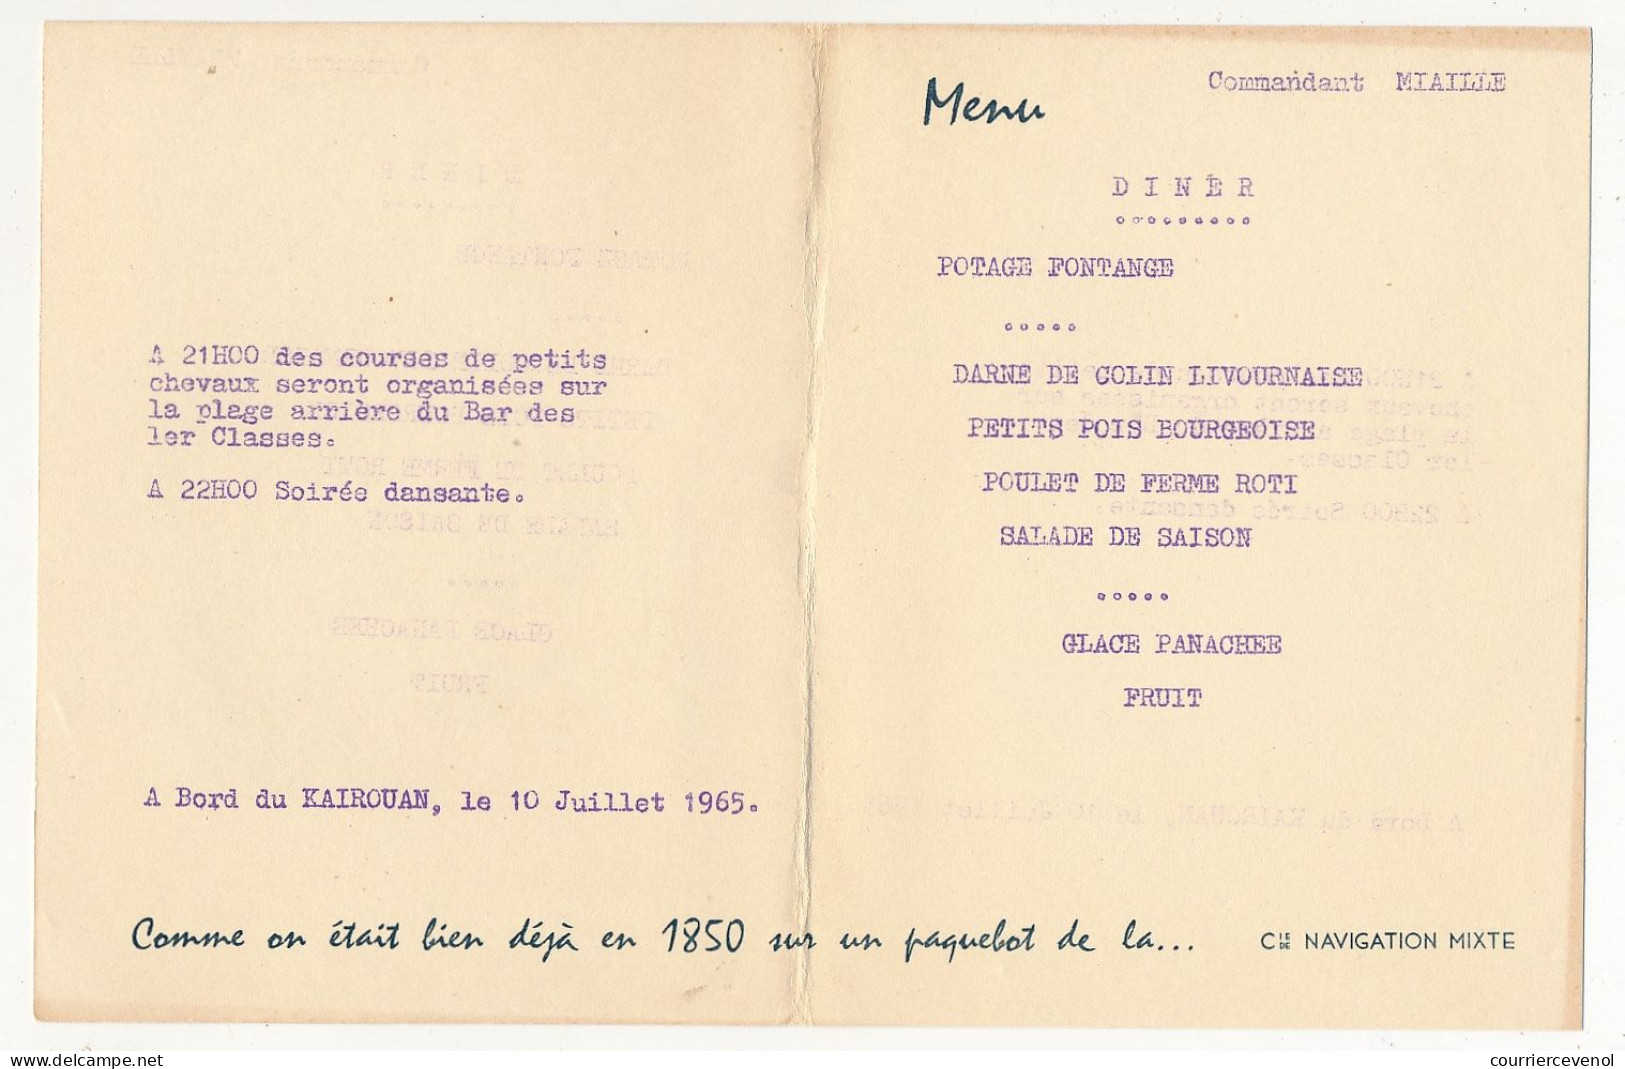 Menu Cie De Navigation Mixte - Commandant Miaille - KAIROUAN 10 Juillet 1965 - Dessin De Chapelet : La Salle à Manger - Menus